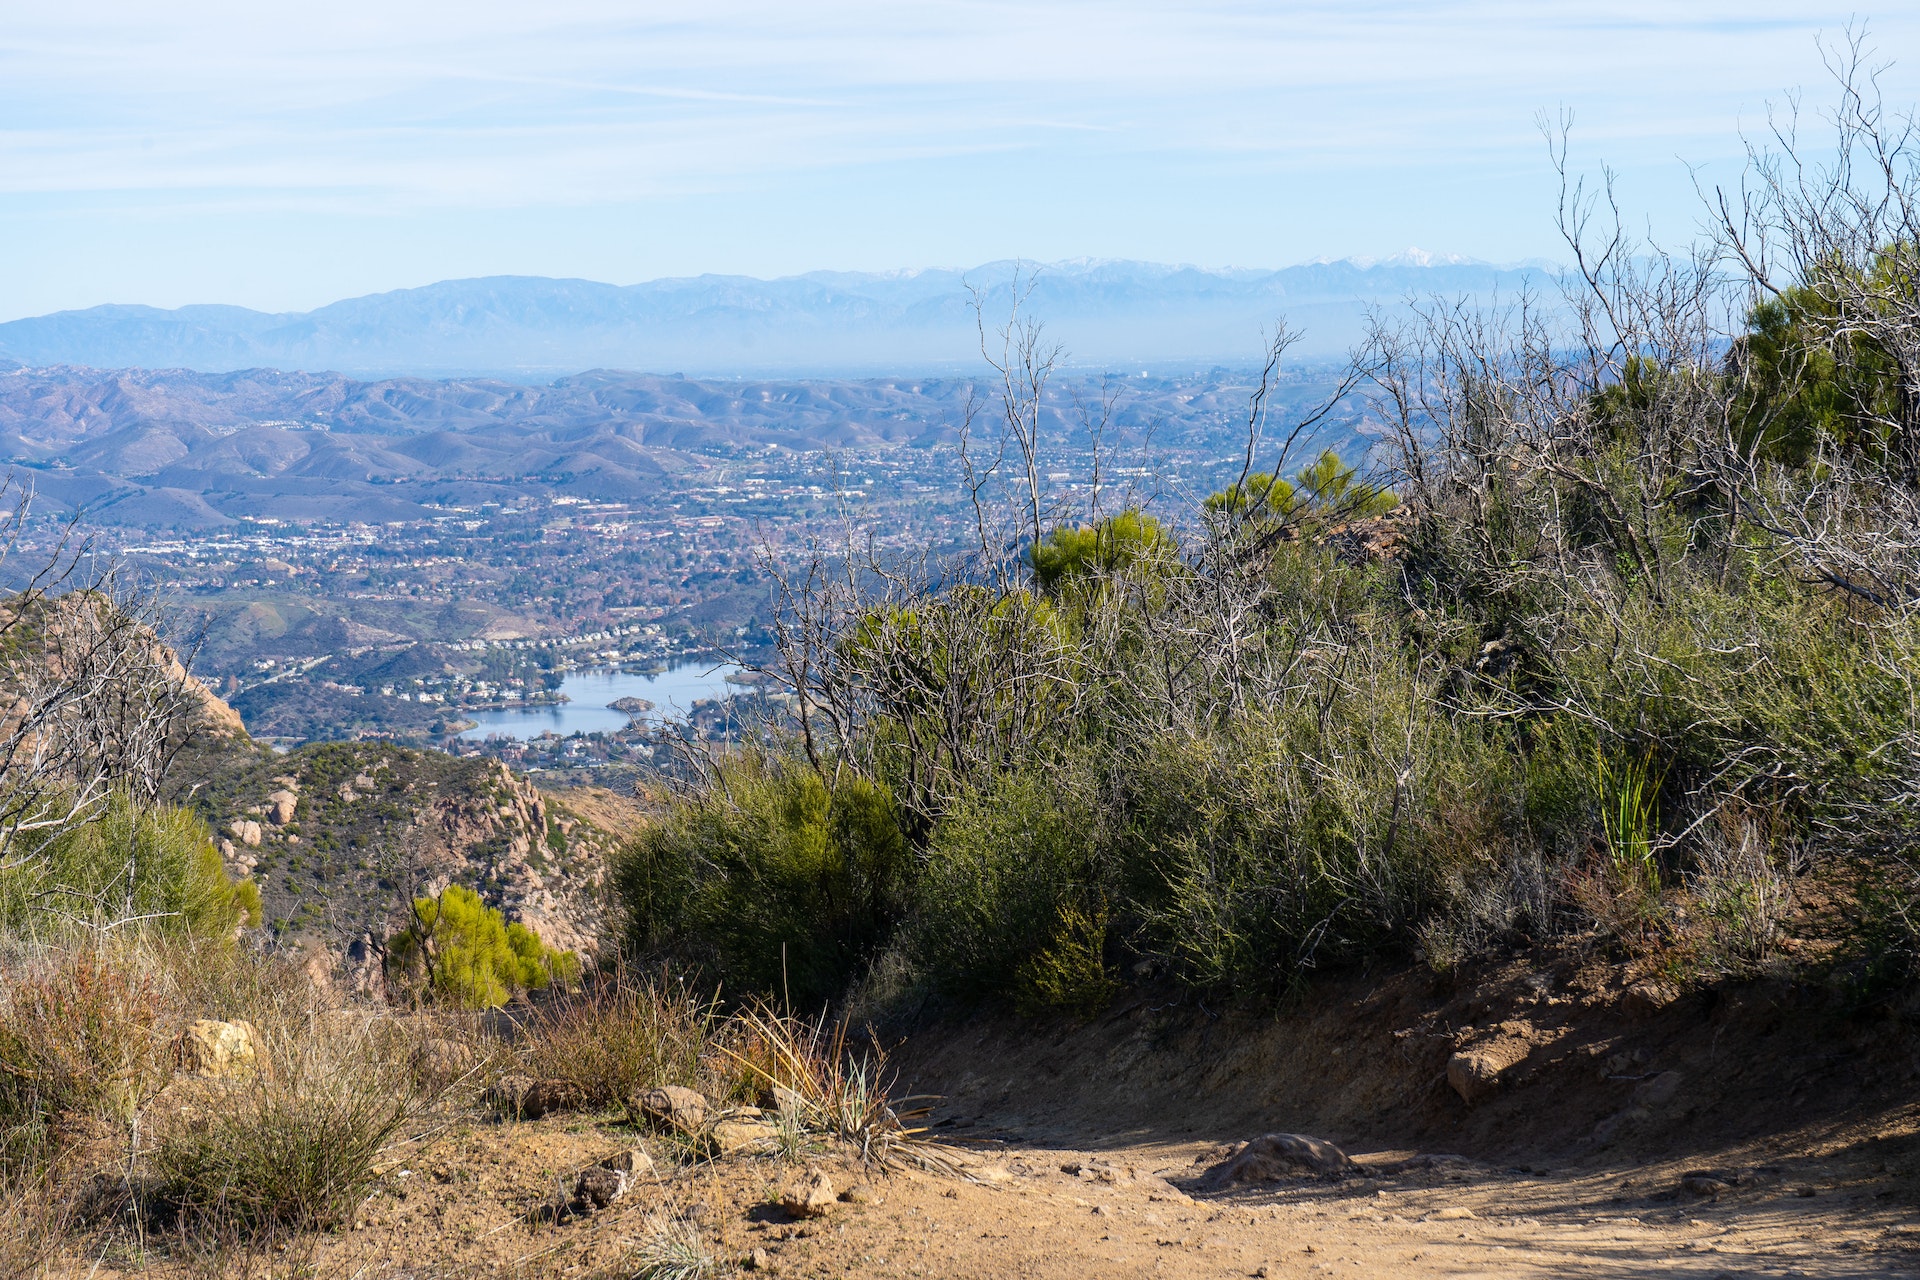 Views hiking to the peak of Sandstone Mountain, Santa Monica Mountains